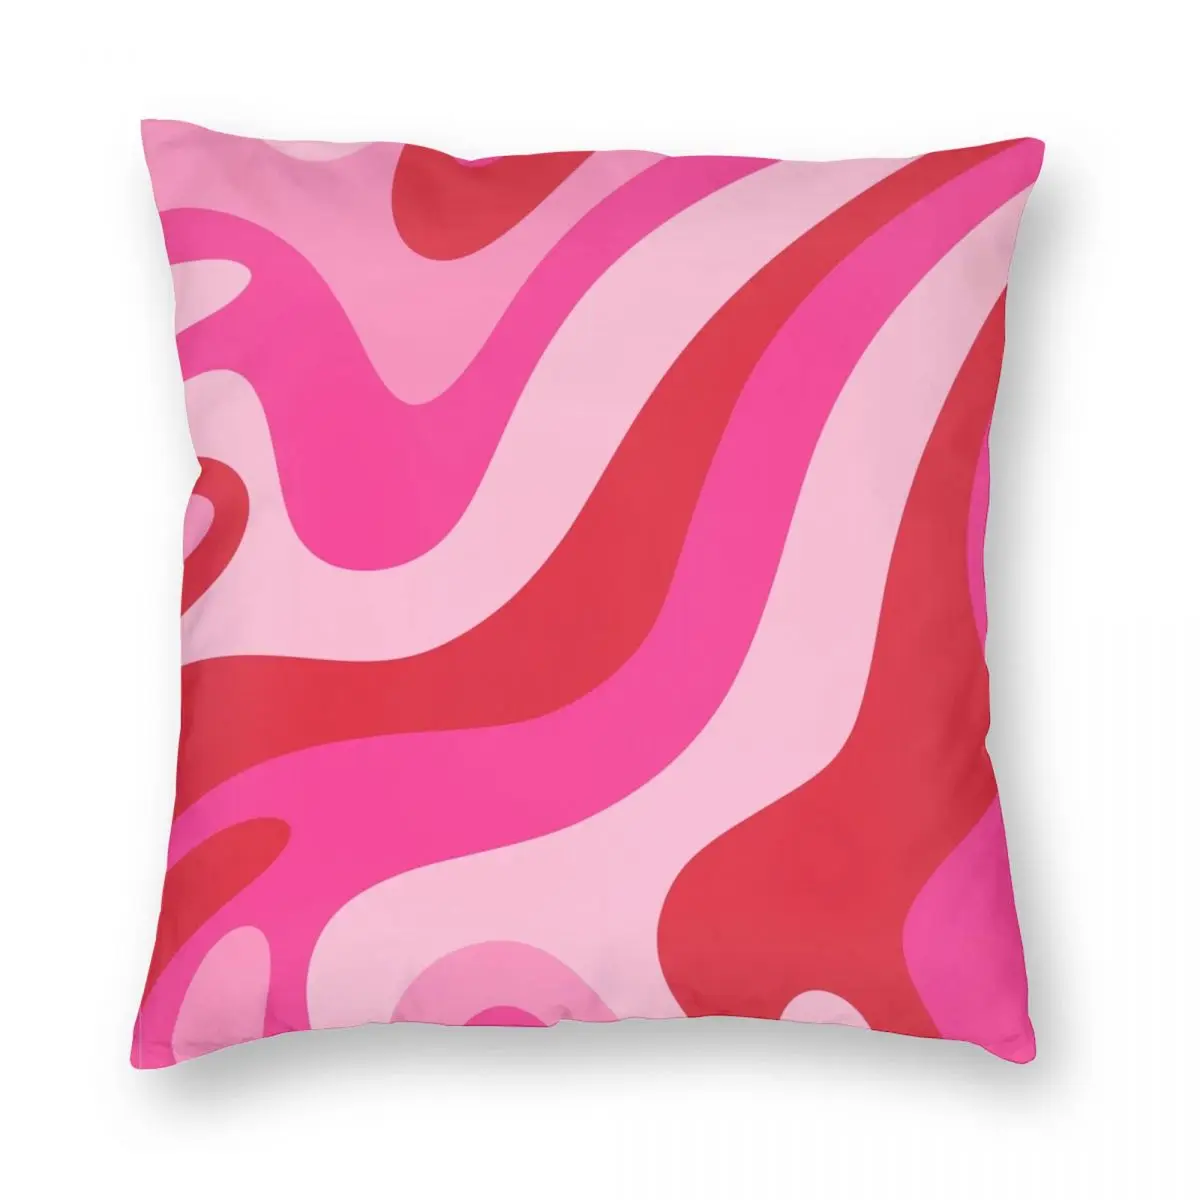 Retro anni '70 Love Swirls federa quadrata poliestere lino velluto stampato Zip decorativo fodera per cuscino cuscino per camera